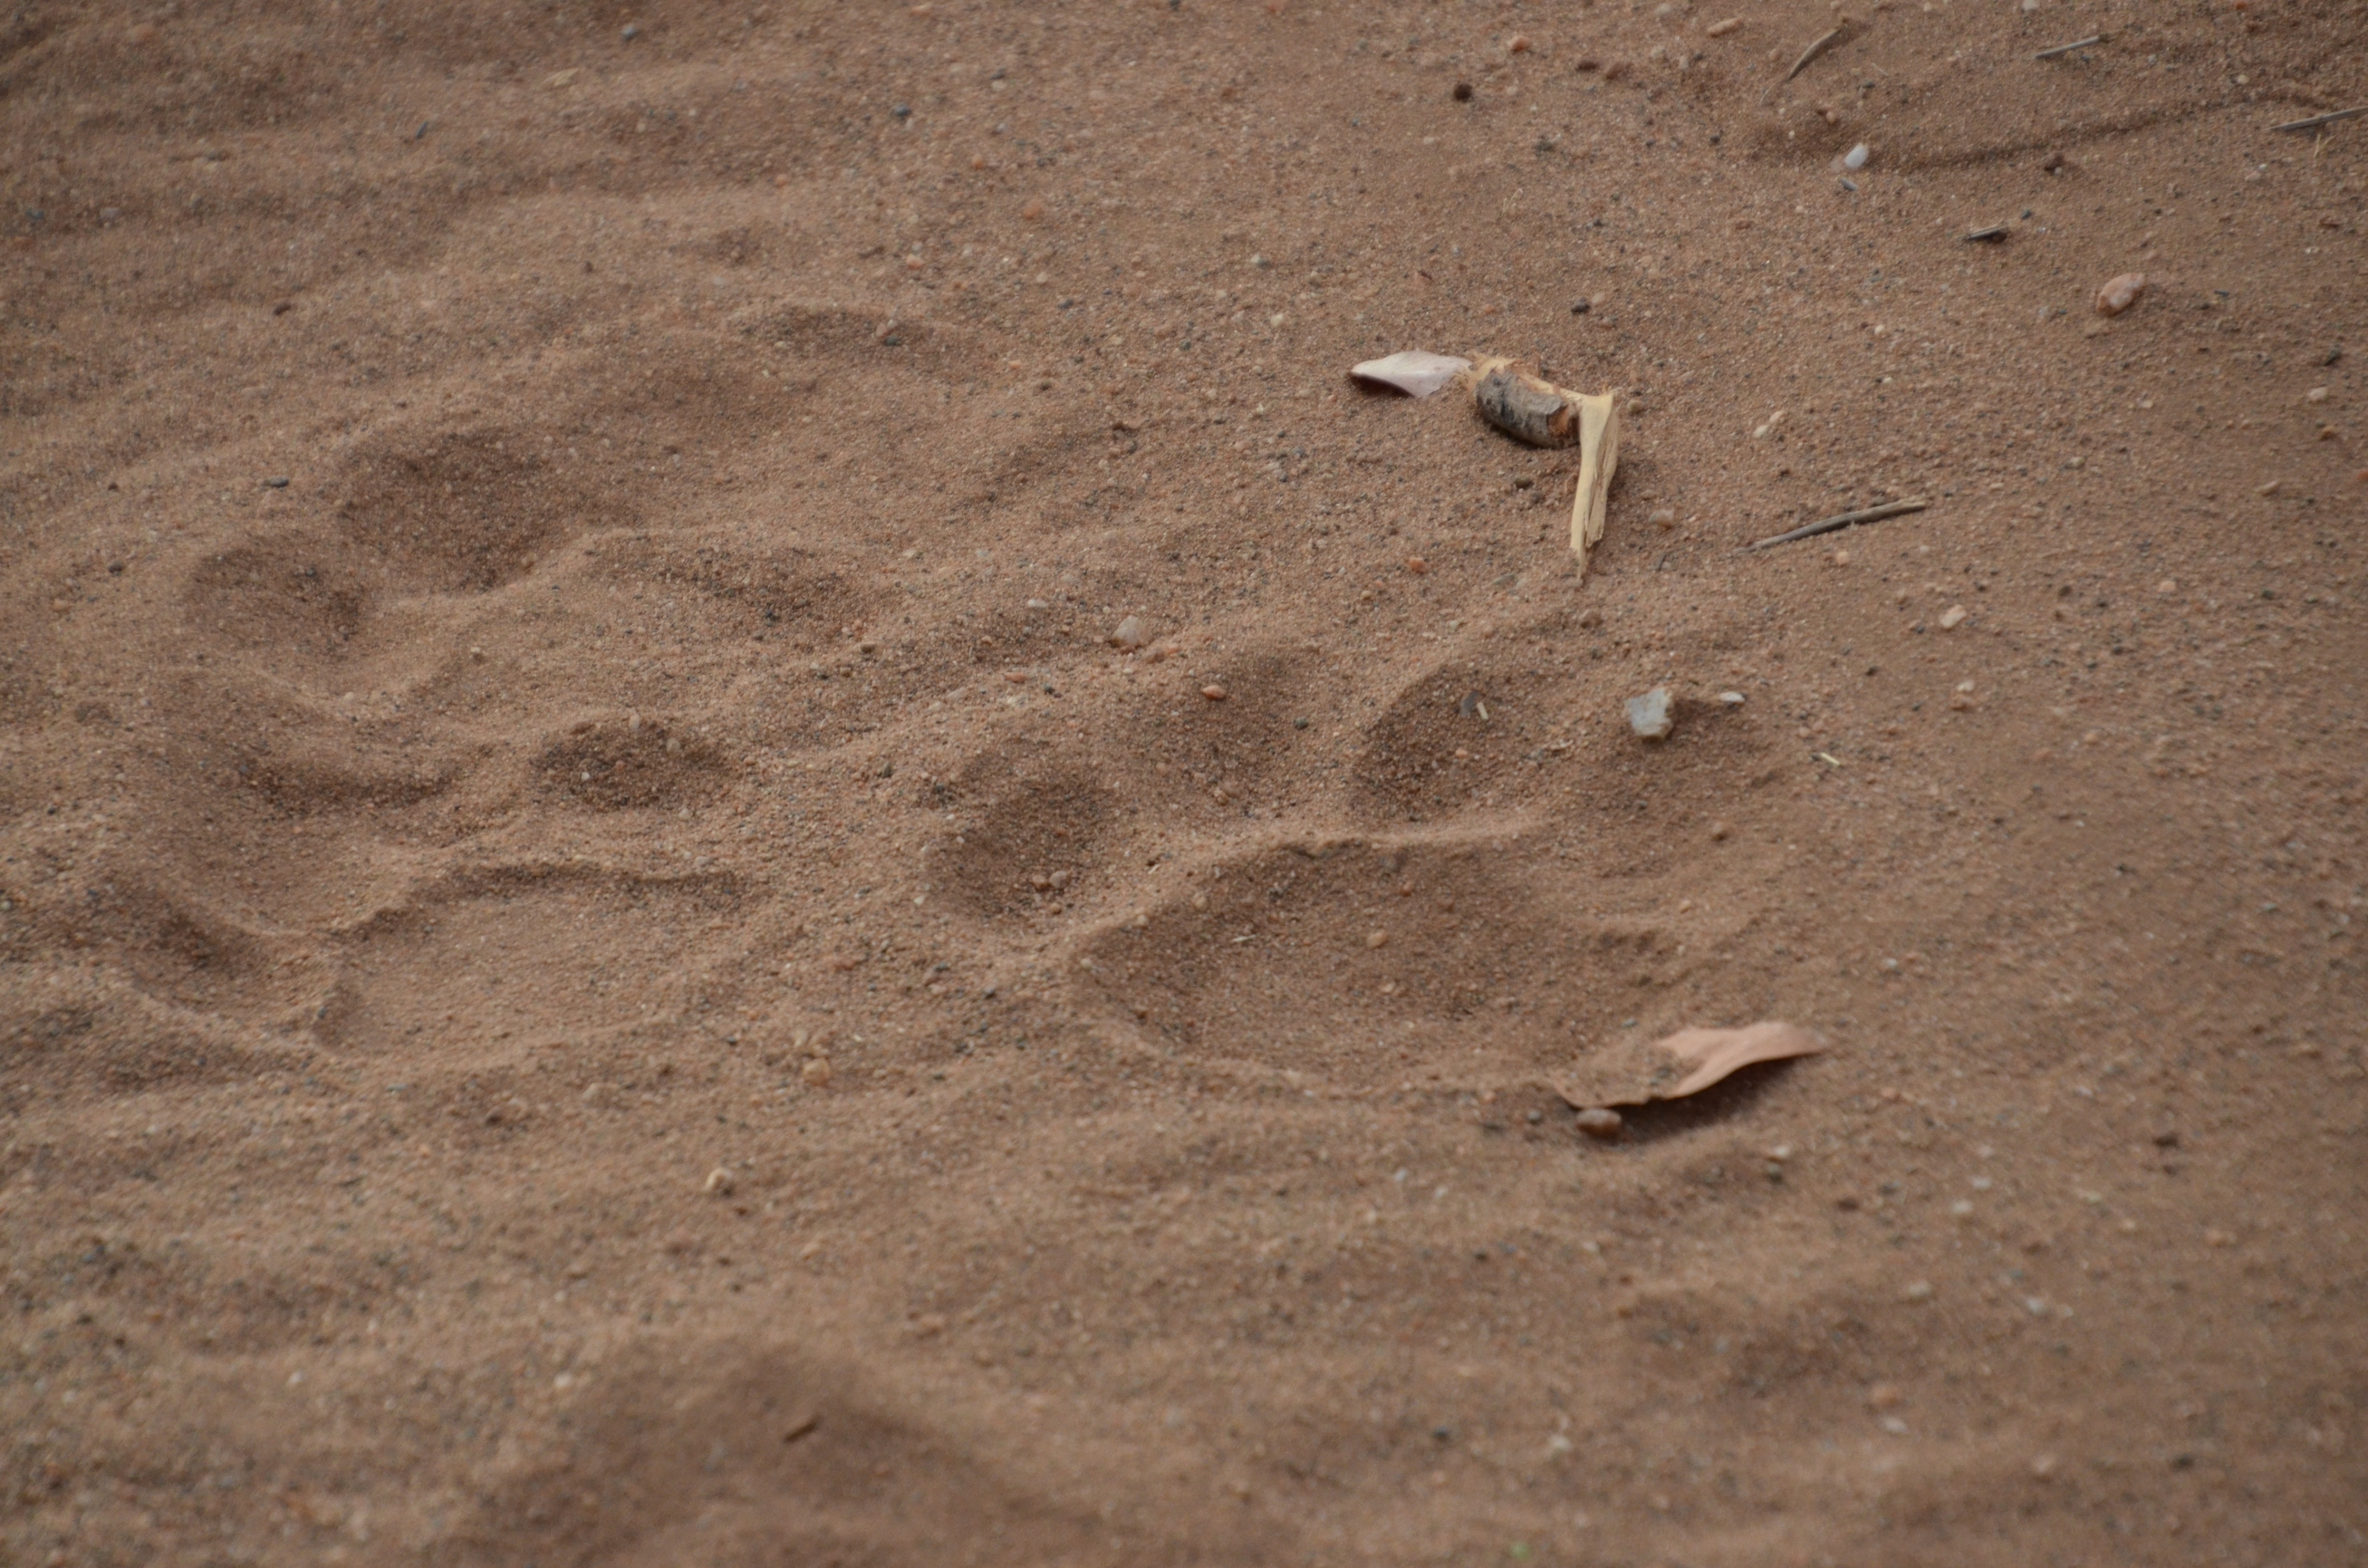 Elephant tracks.